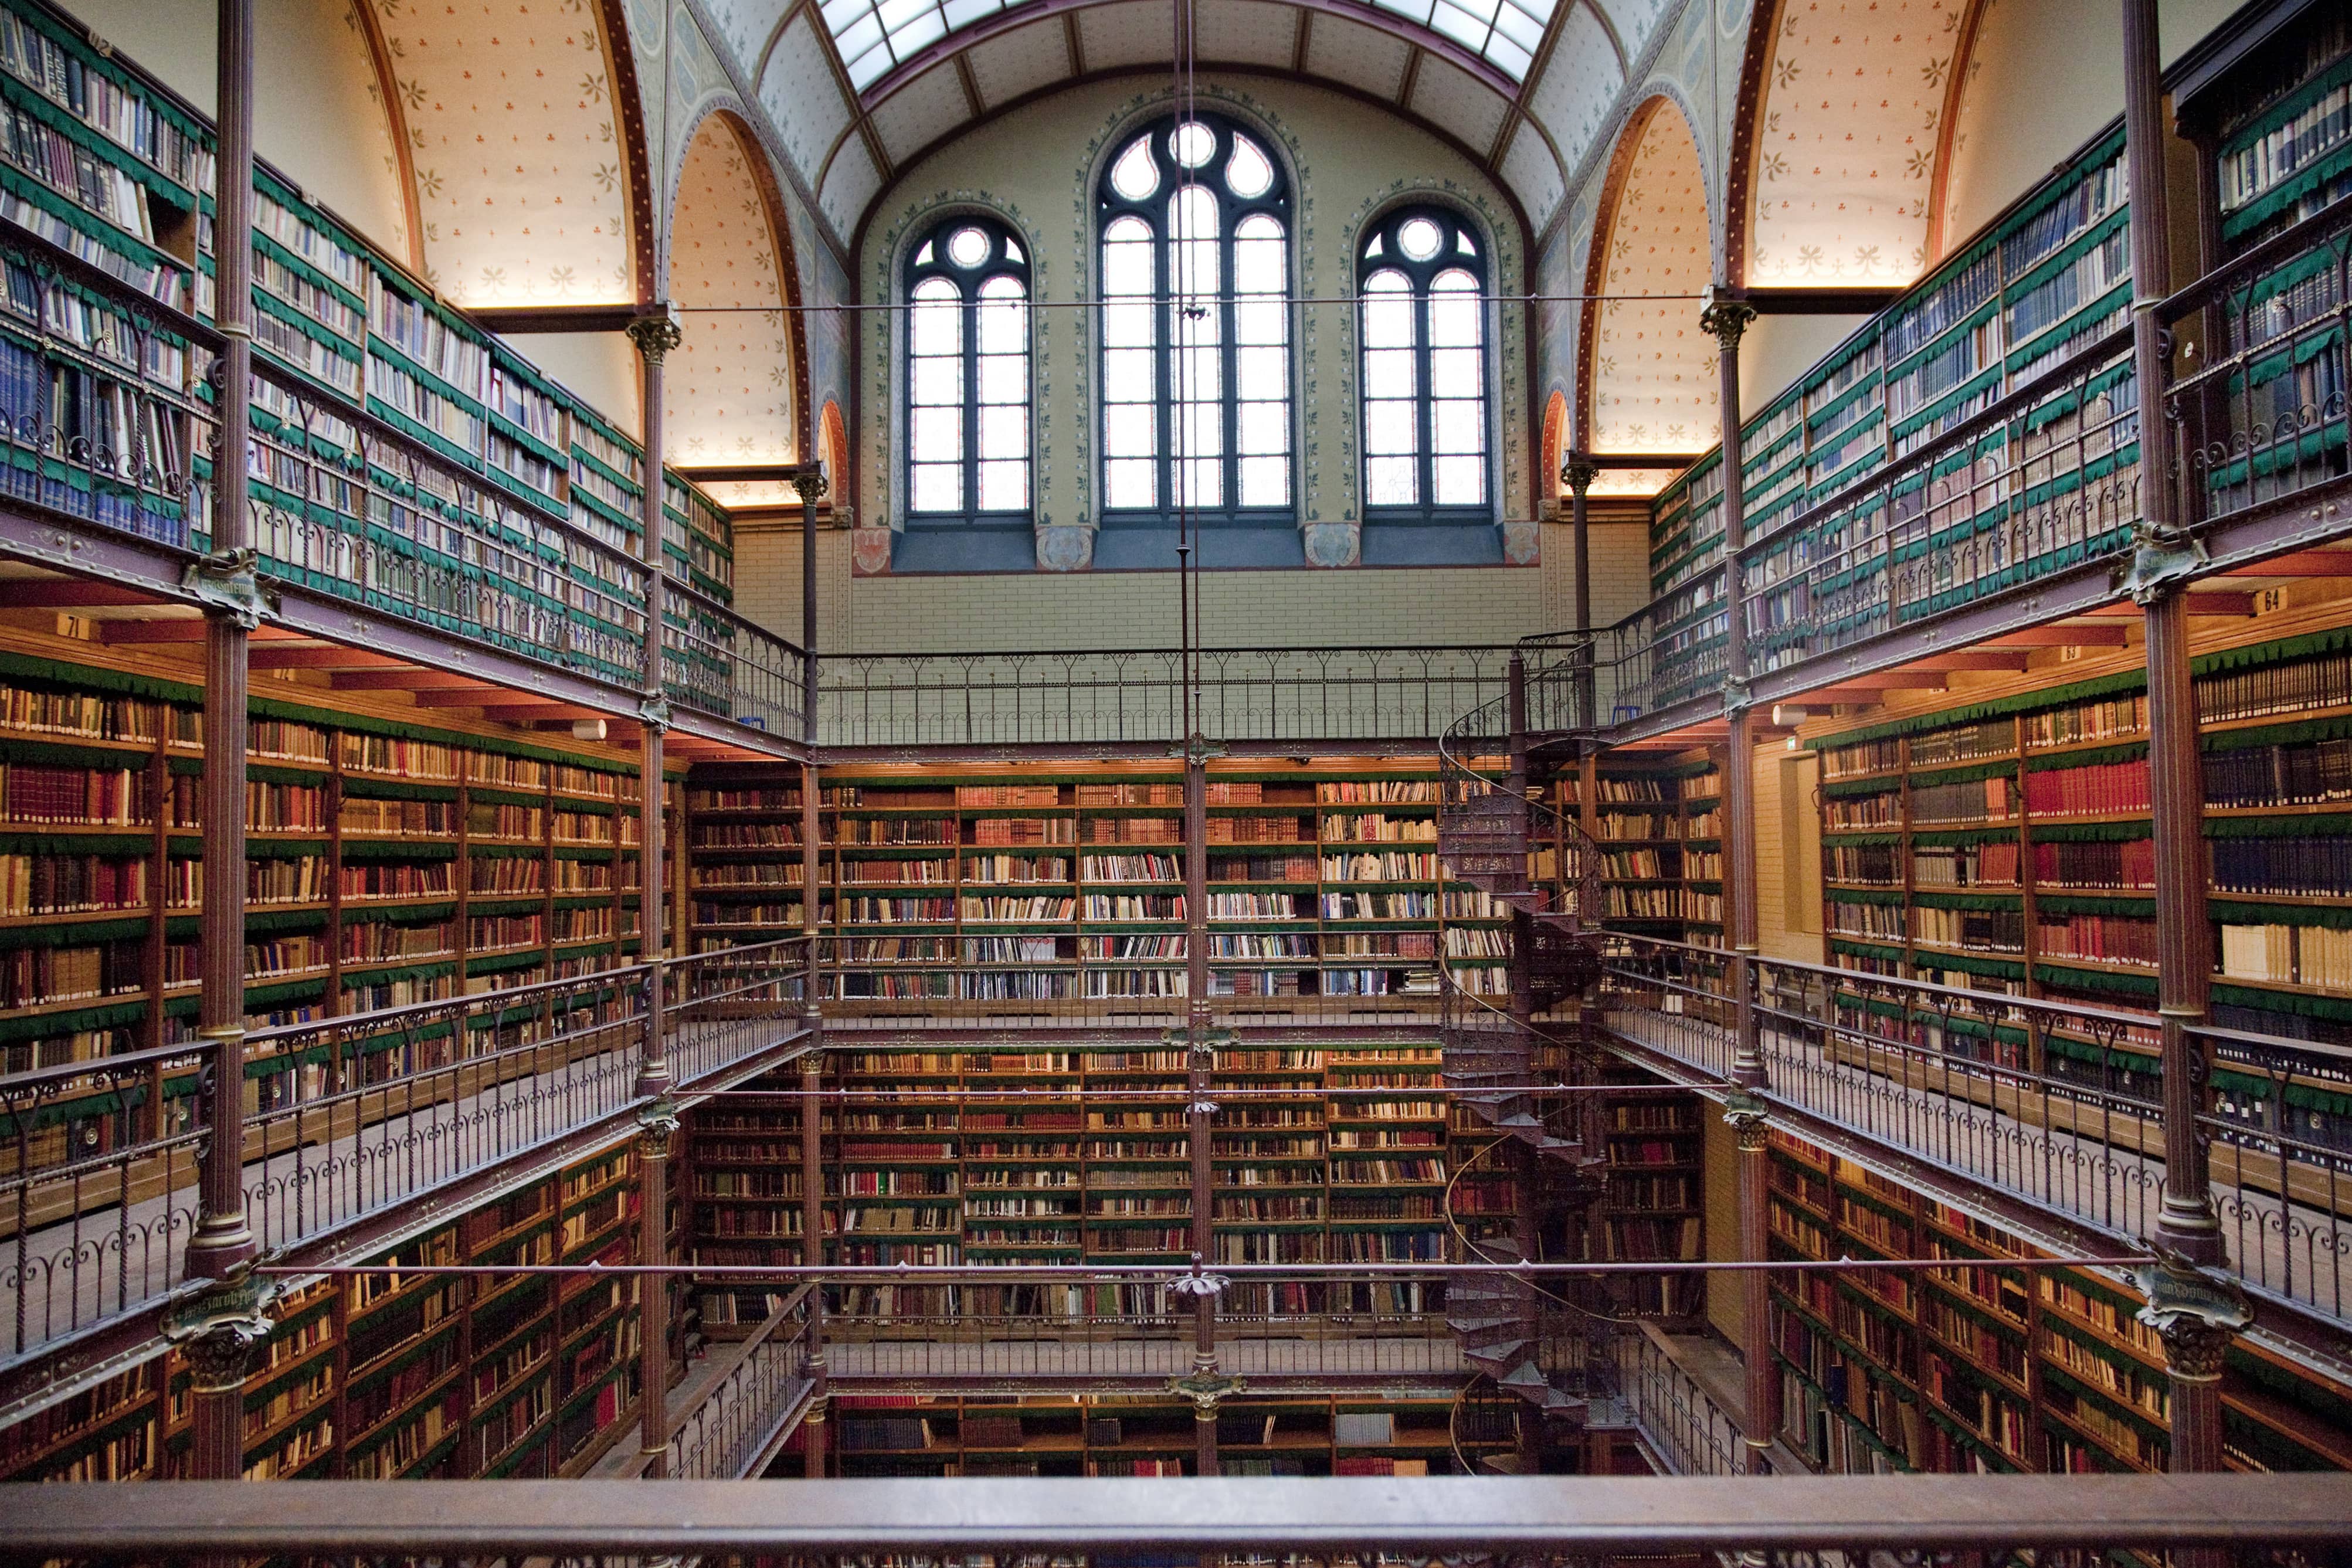 Библиотека н е. Библиотека монастыря Святого Флориана. Йельский университет библиотека. Библиотека Голландия архитектура. Библиотека Джорджа Пибоди, Балтимор, США.